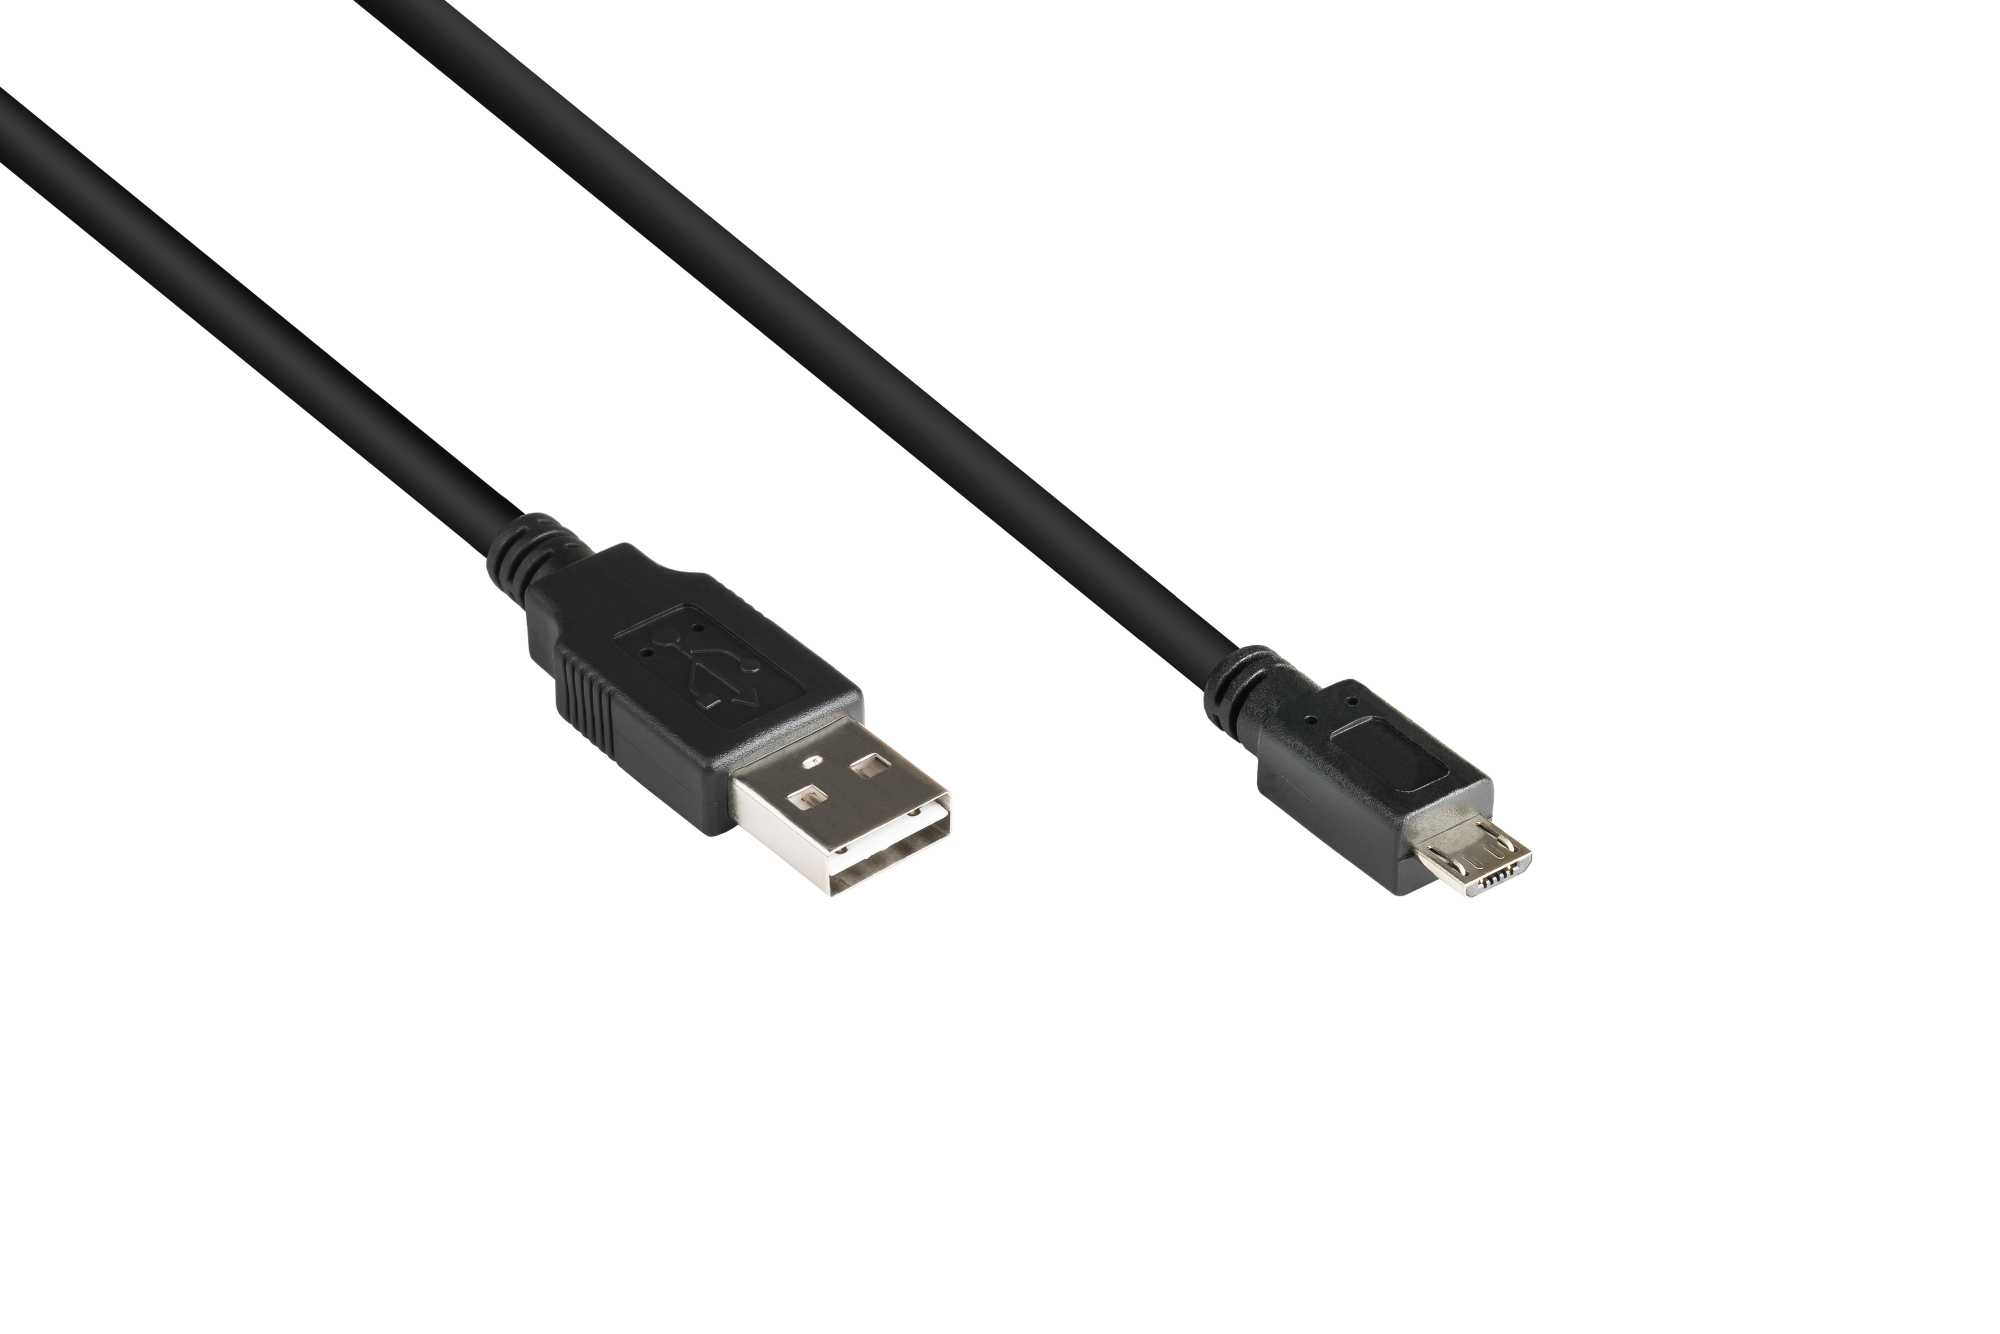 Anschlusskabel USB 2.0 EASY Stecker A an Stecker Micro B, schwarz, 1m